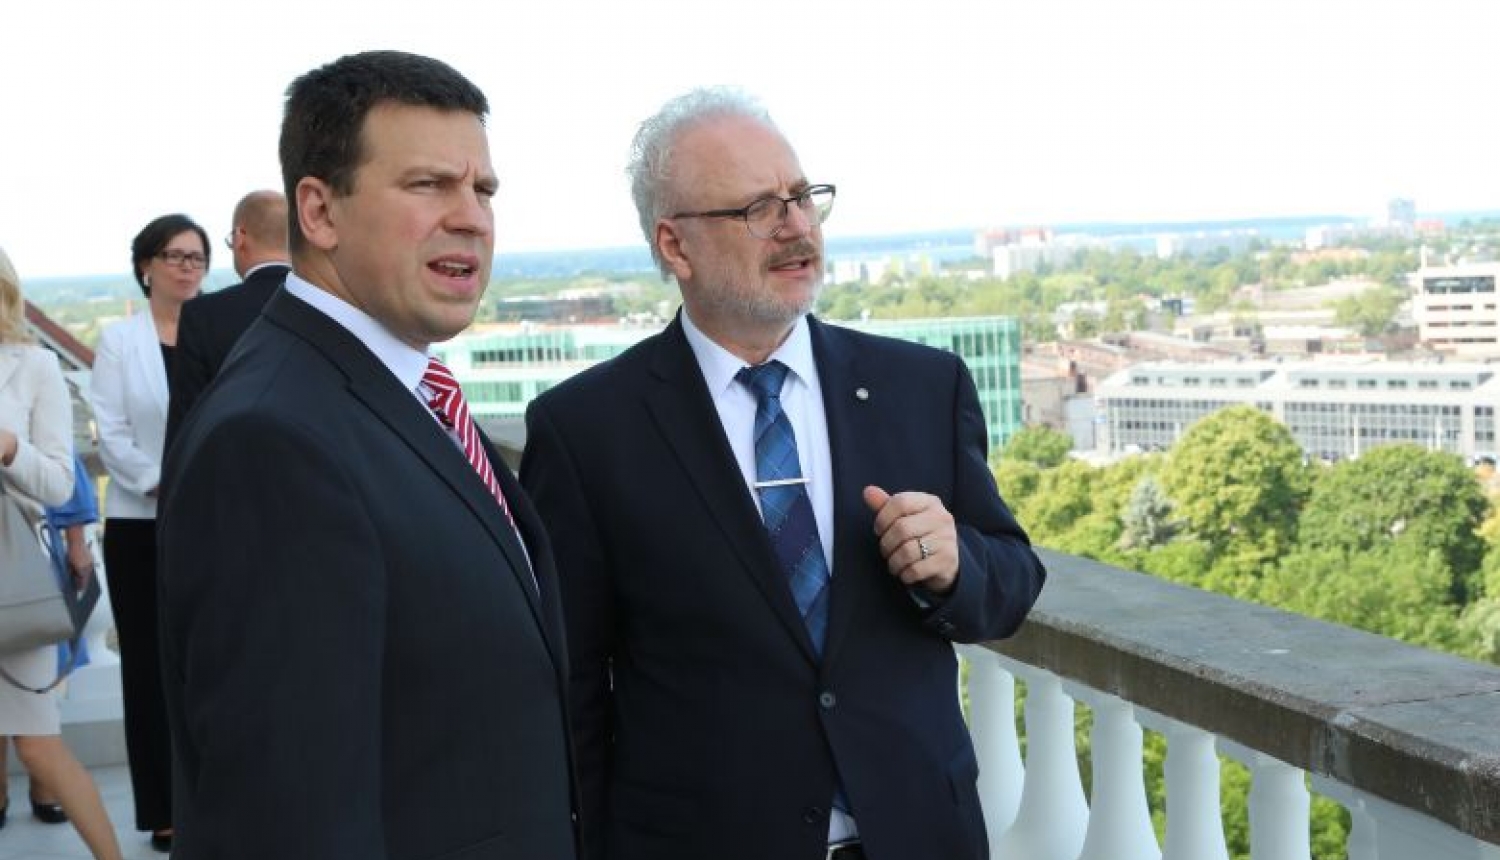 Valsts prezidents un Igaunijas premjers pārrunā iespēju veidot kopīgus digitālos pakalpojumus iedzīvotājiem